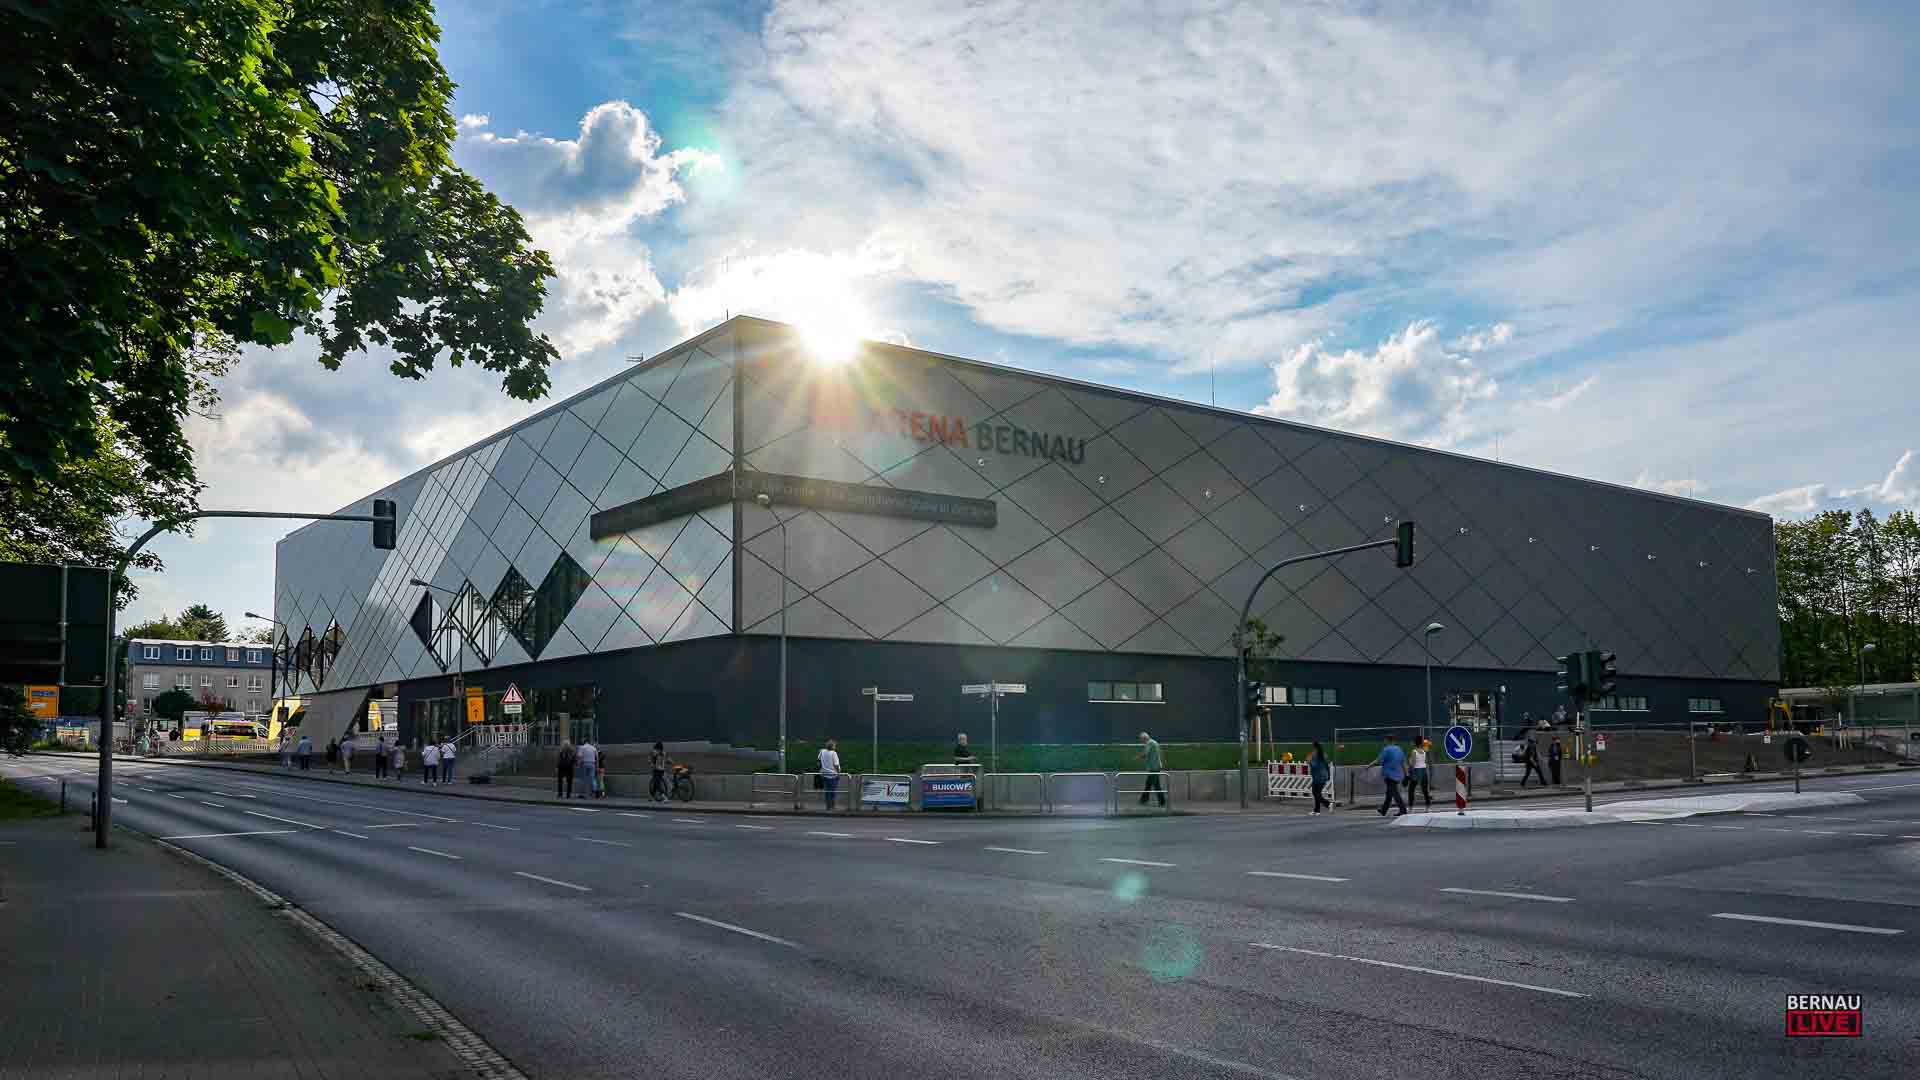 Stadtverordnetenversammlung: heute in der Sparkassen-Arena Bernau